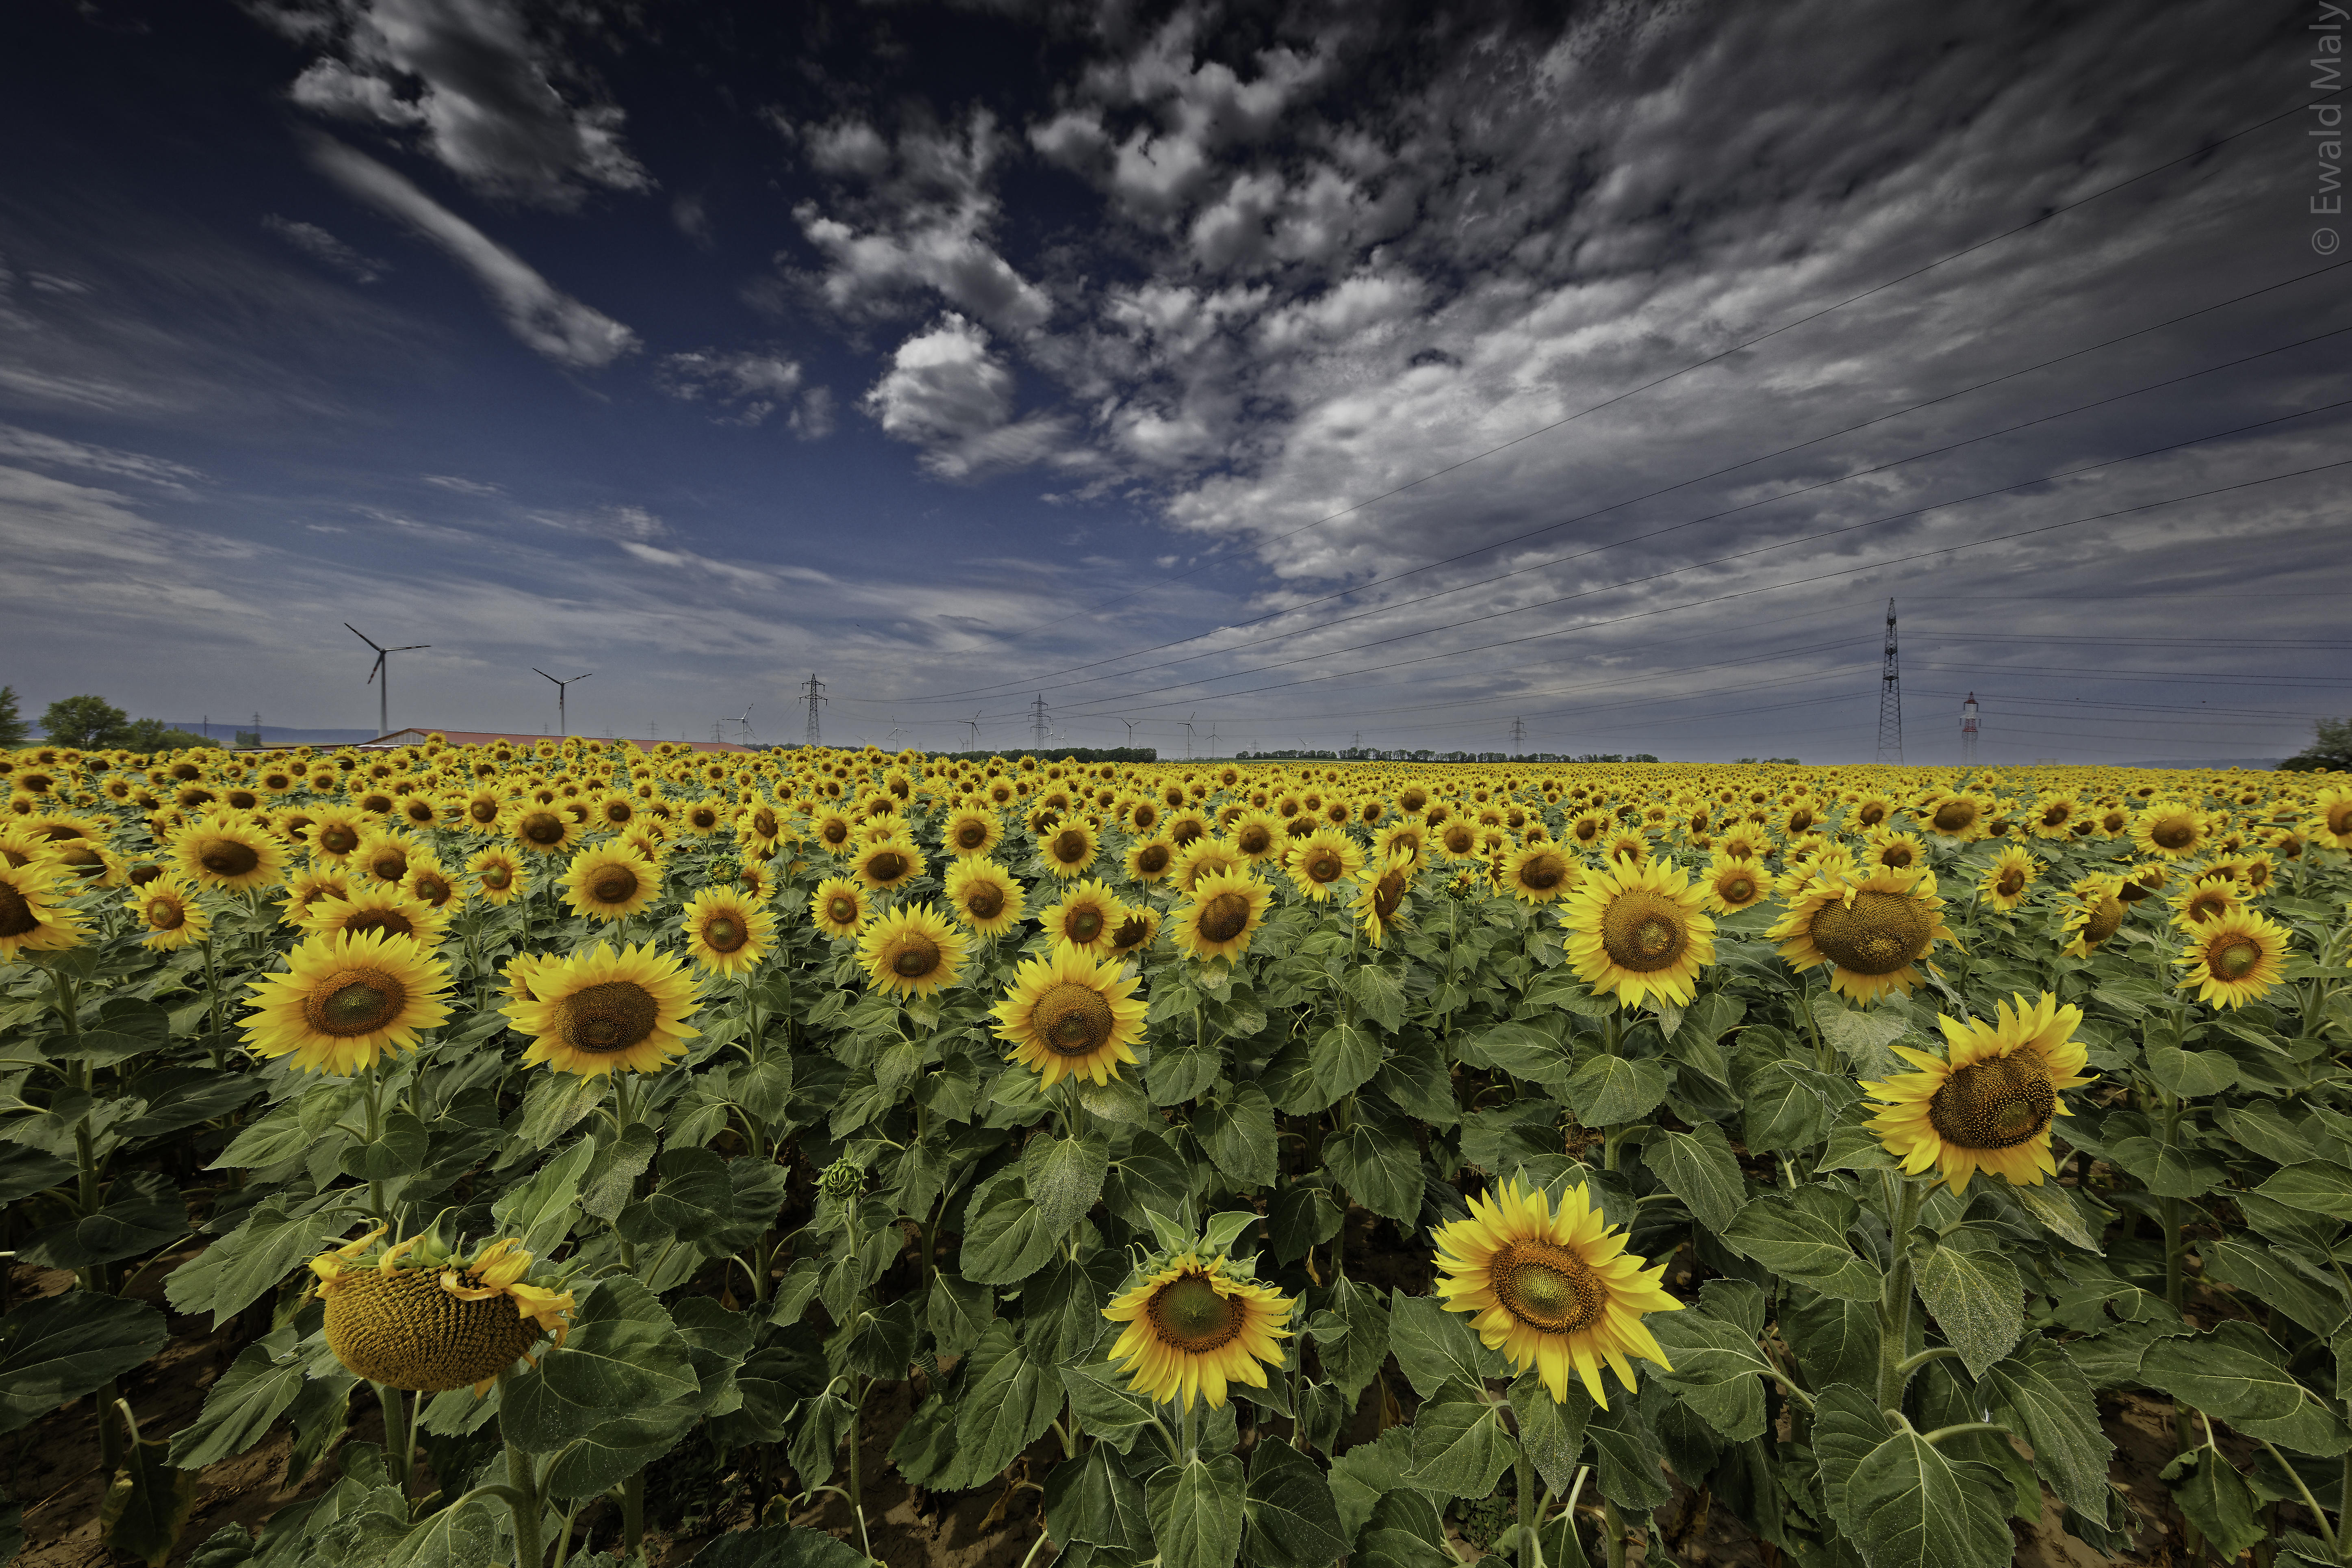 Wallpapers sunflowers sunflower field large field on the desktop